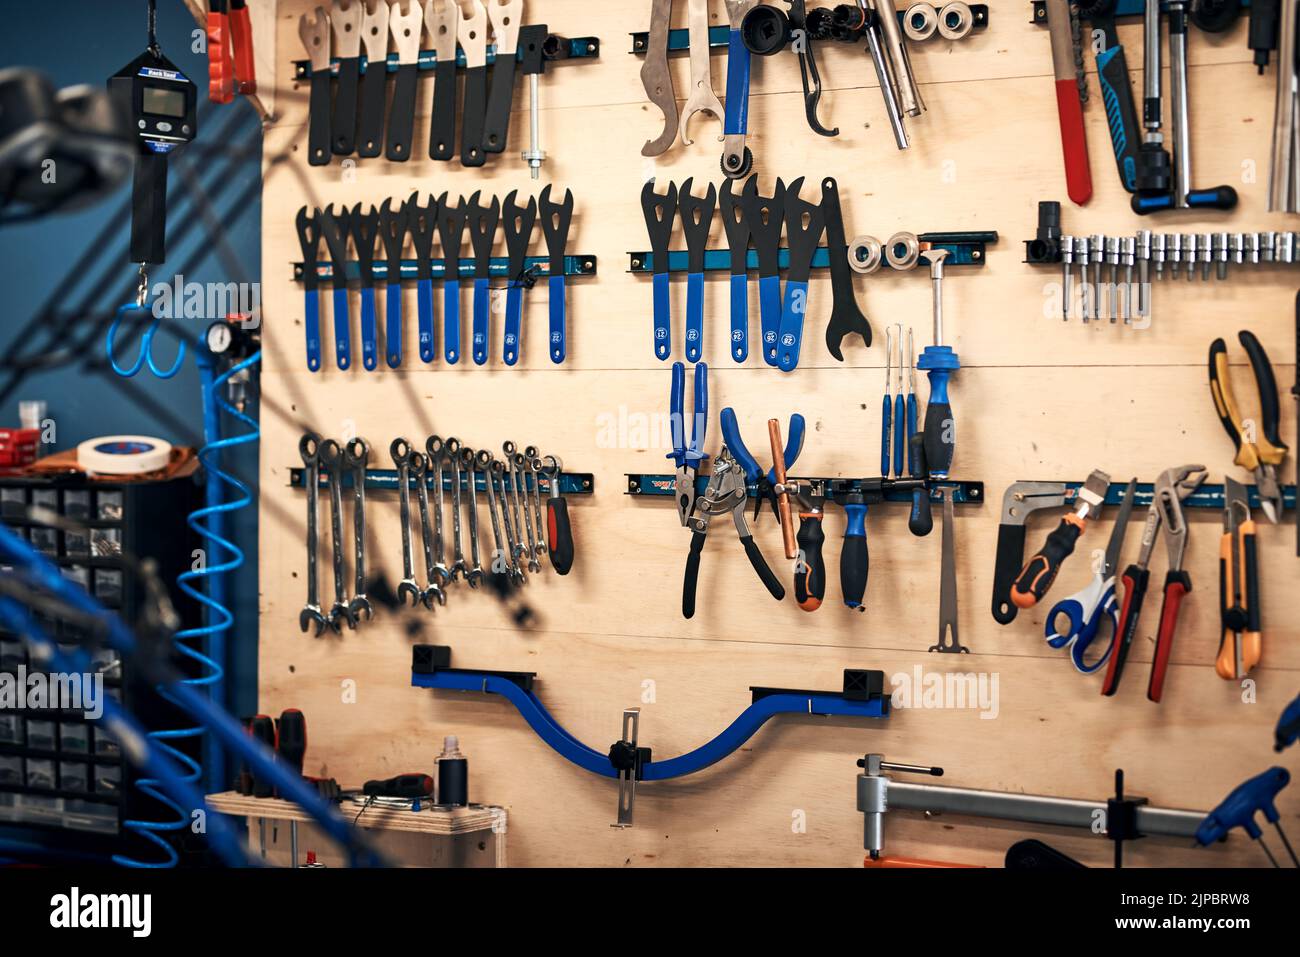 Es gibt ein Werkzeug für jeden Reparaturauftrag. Werkzeuge in einer Werkstatt. Stockfoto